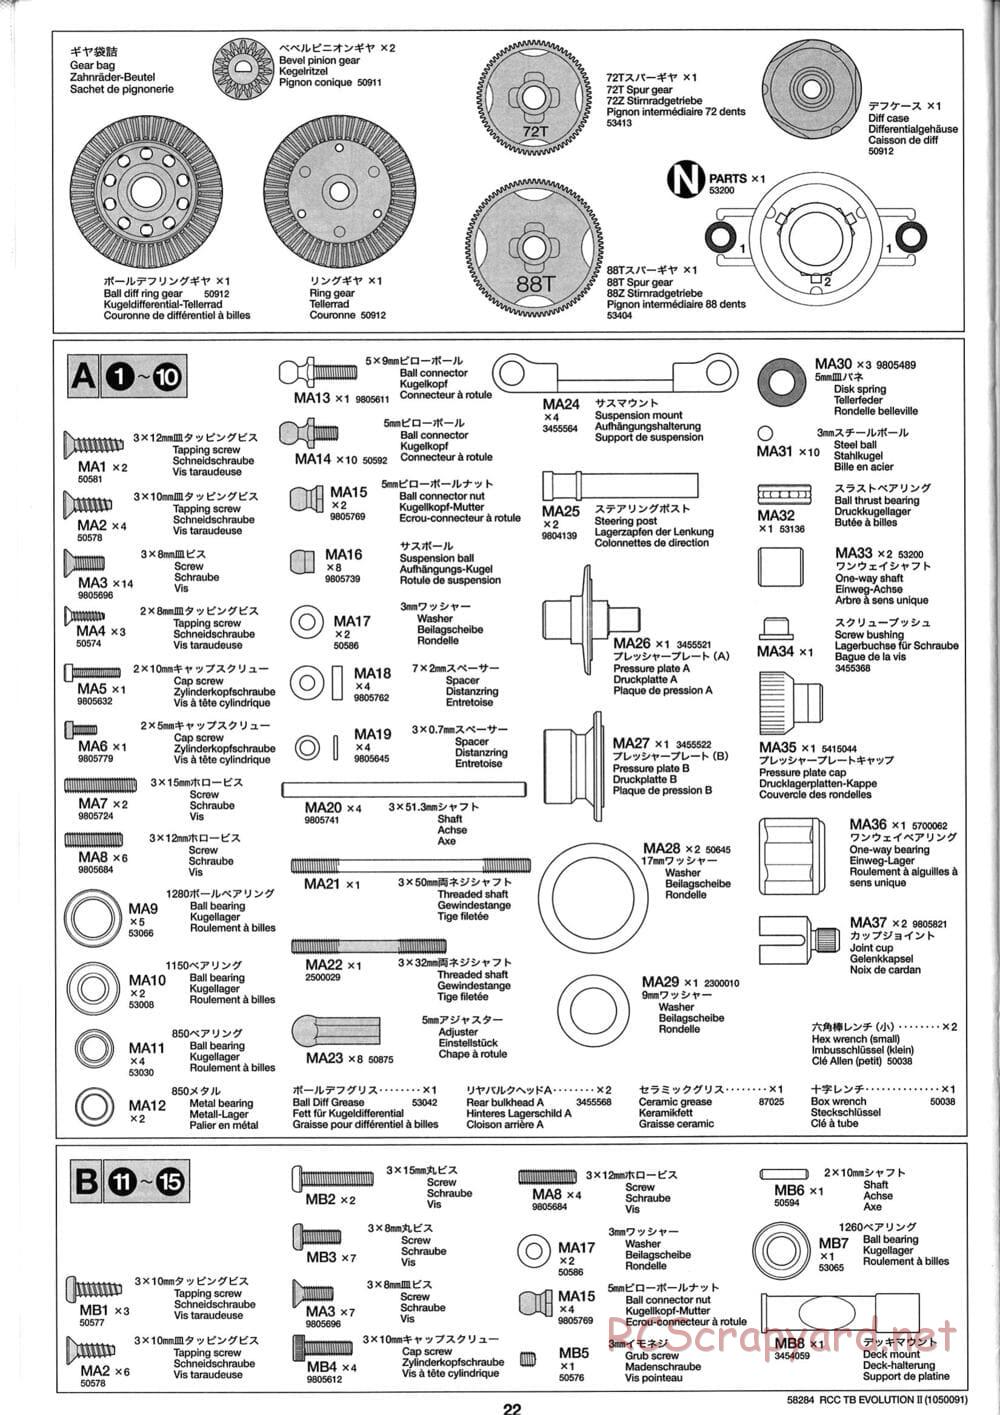 Tamiya - TB Evolution II Chassis - Manual - Page 22